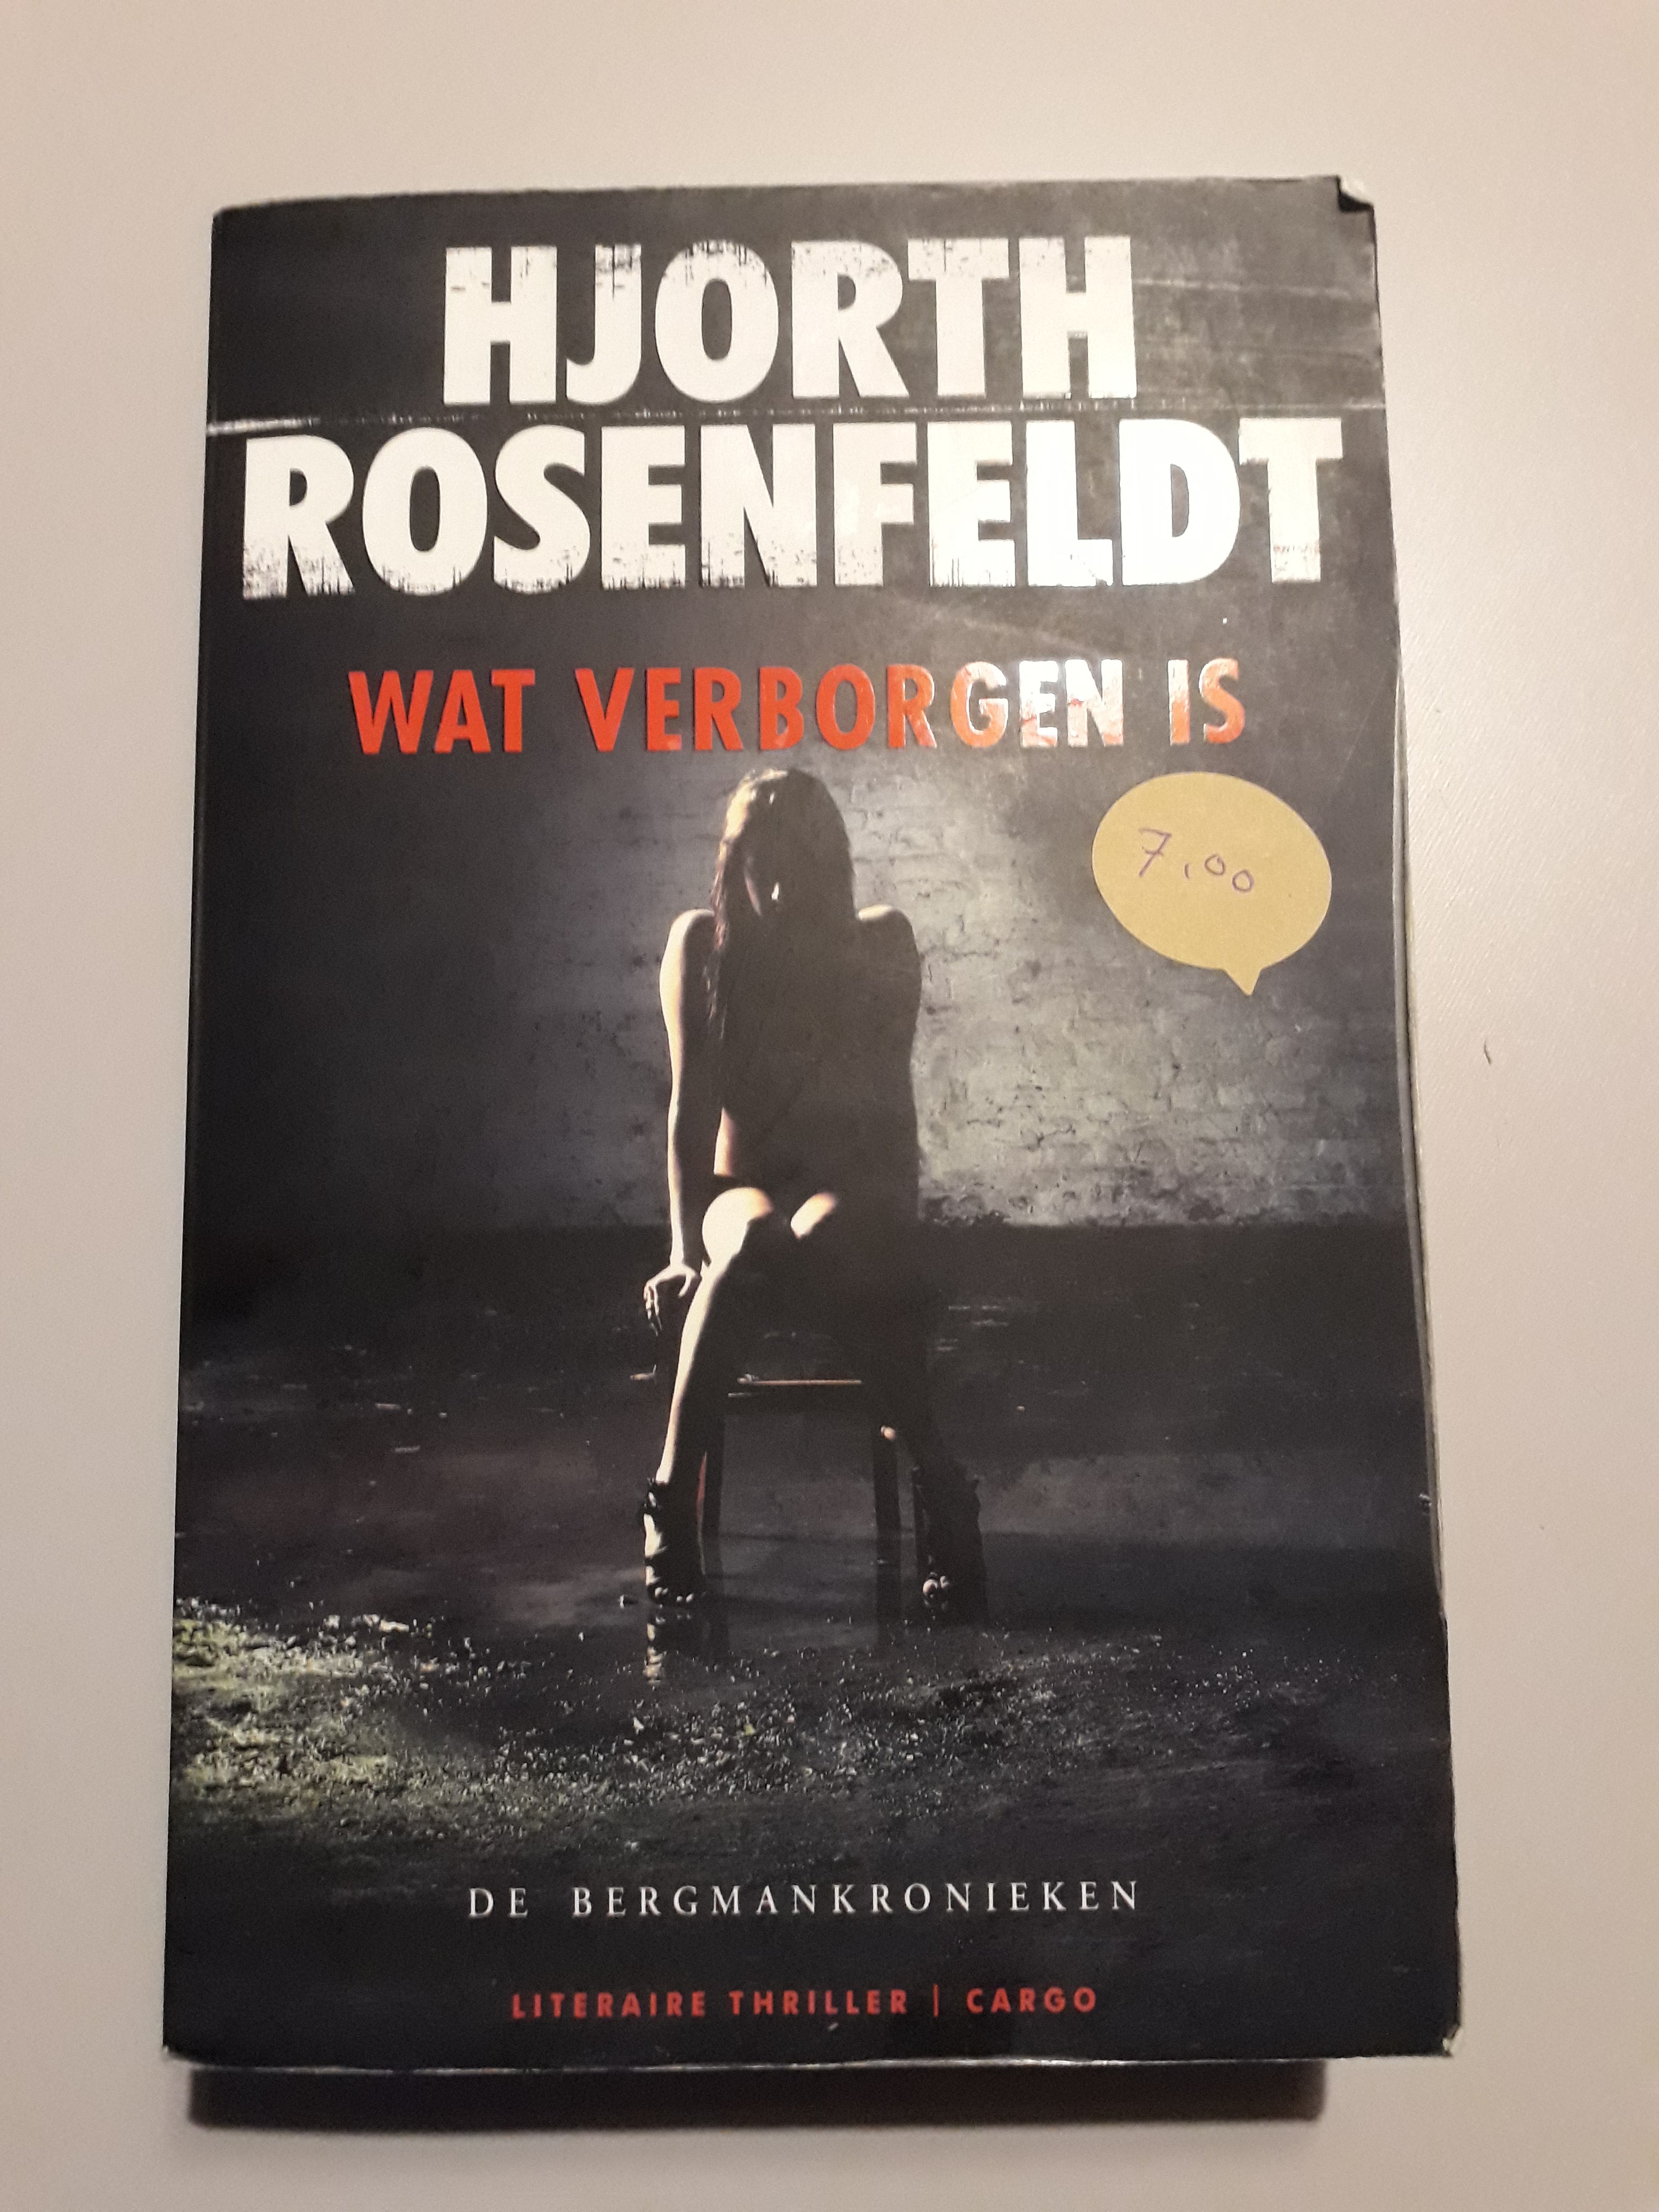 Hjorth Rosenfeldt - Wat verborgen is - 2dehands gebruikt